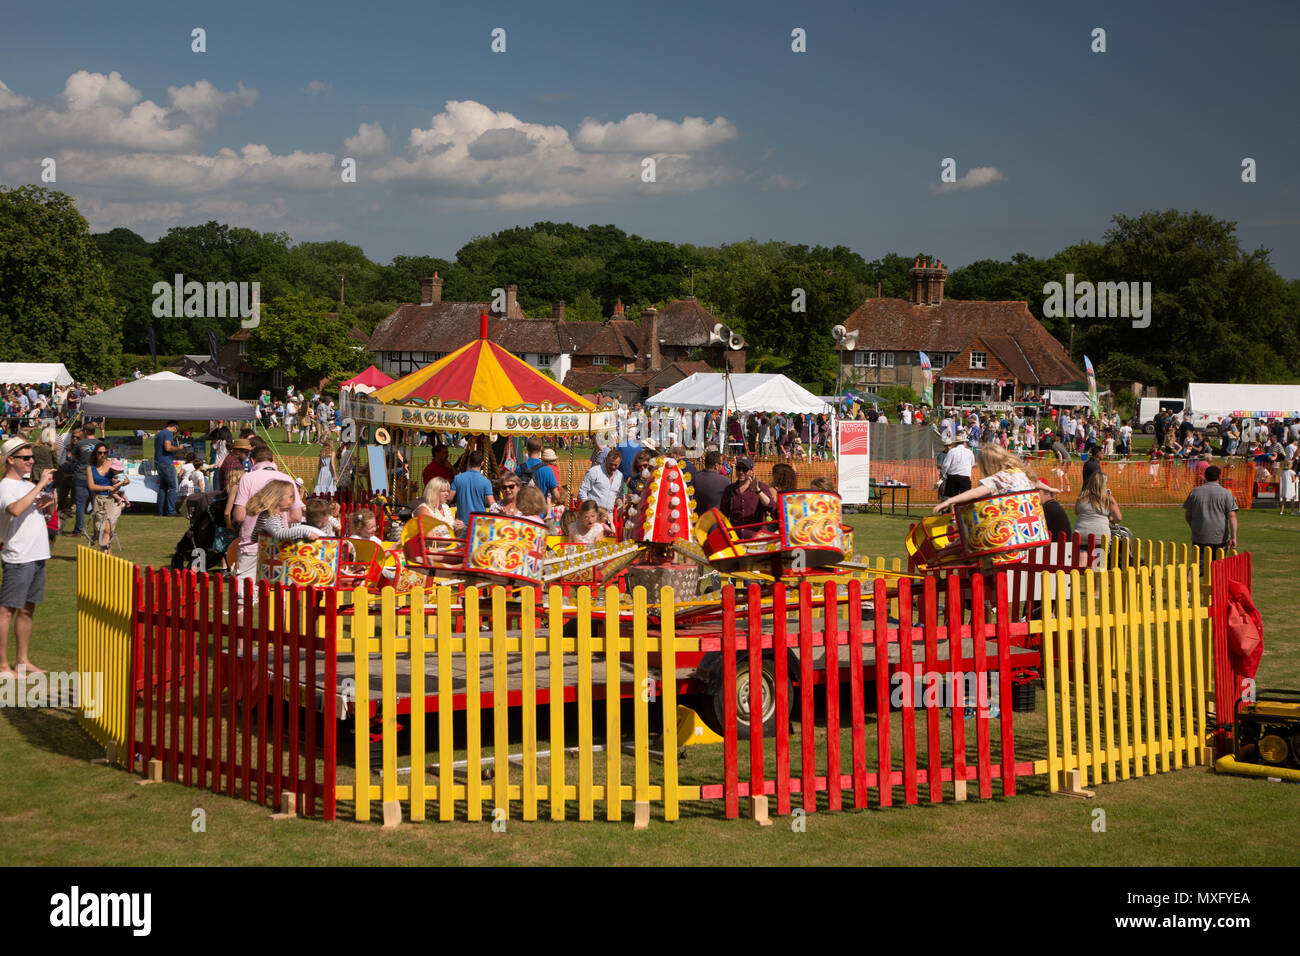 Englisch Dorffest in Lurgashall Sussex. Traditionelle Fete mit  Verkaufsständen Kaffee Zelt, Musik und Spiele Stockfotografie - Alamy